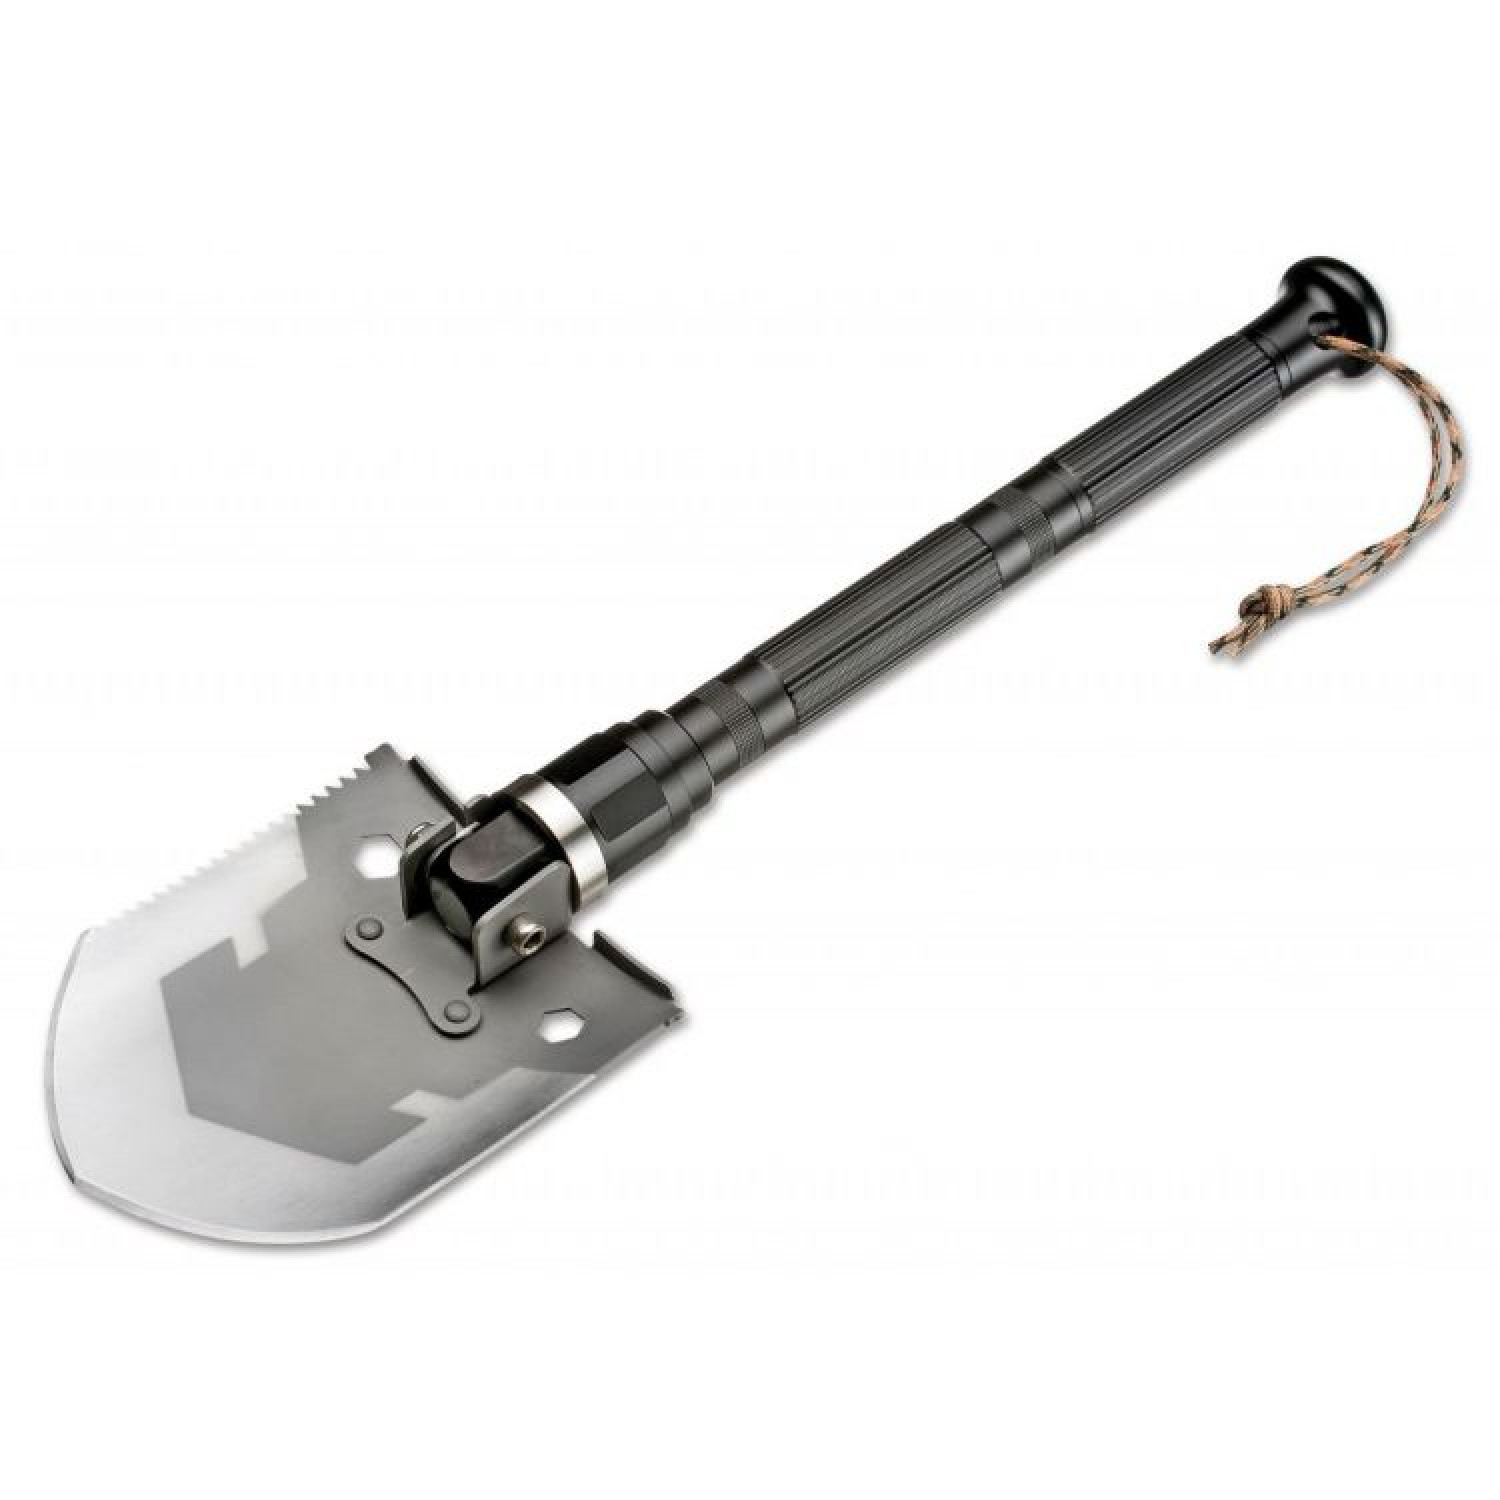 Многофункциональная складная лопата Magnum Multi Purpose Shovel, Boker